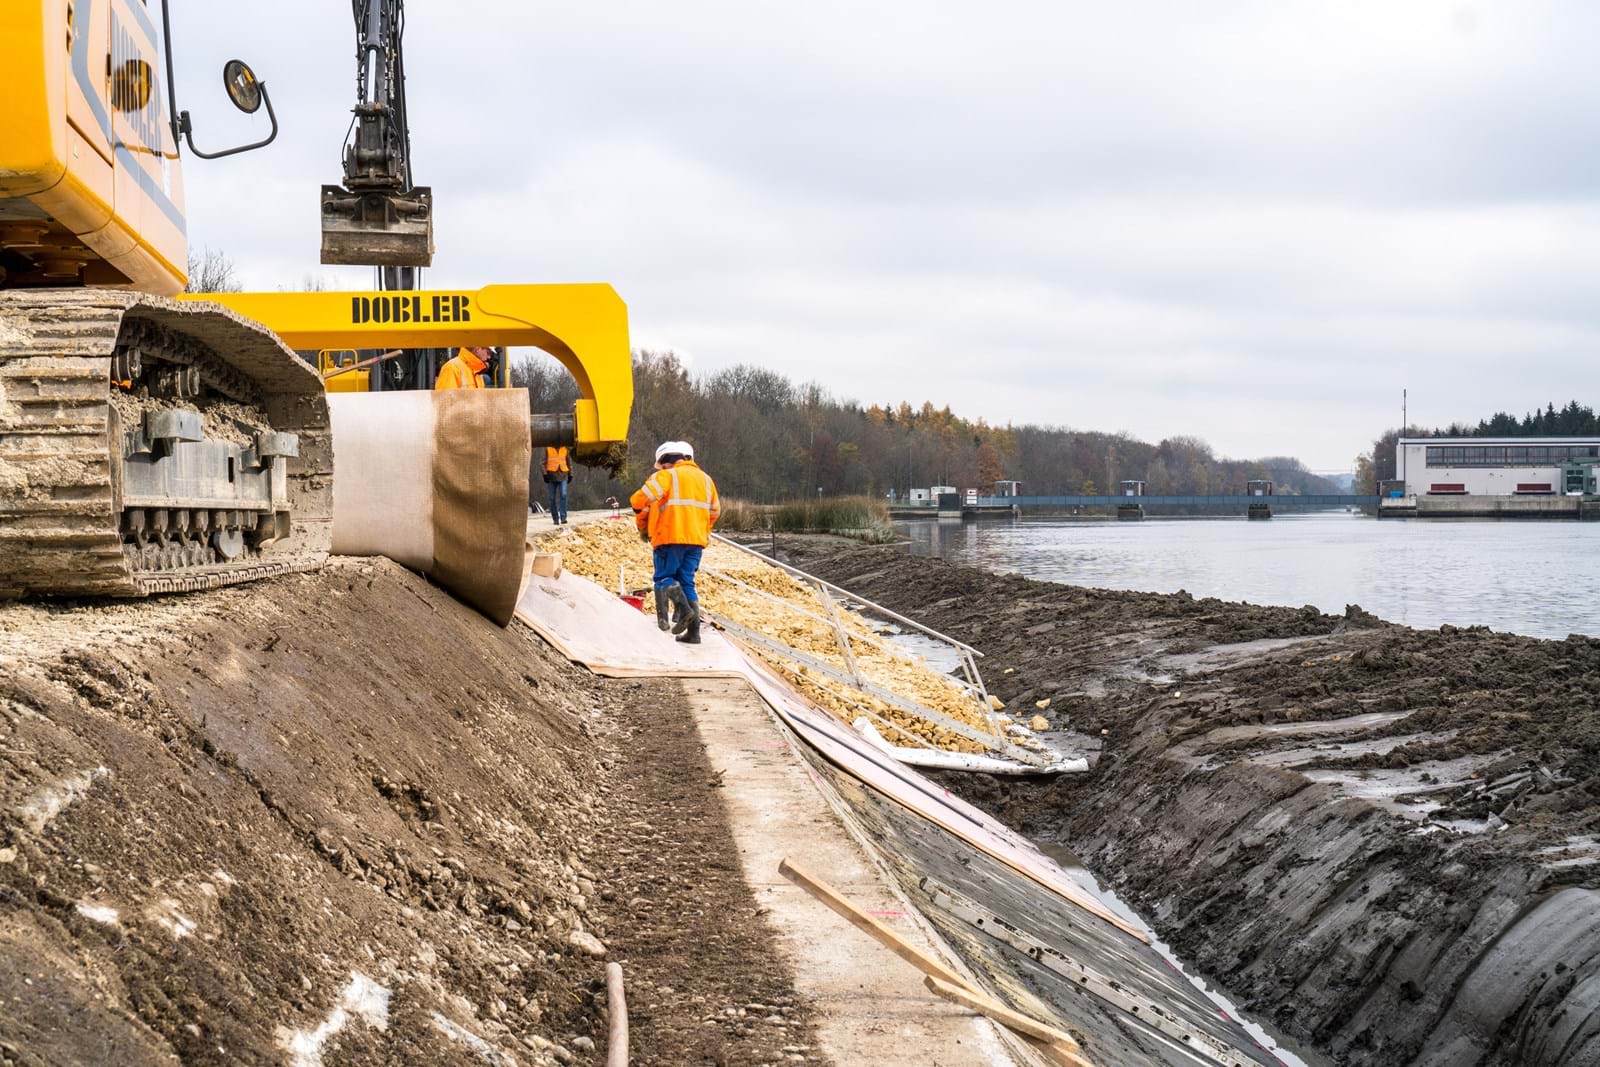 Vor kurzem haben die Bauarbeiten an der Staustufe Offingen begonnen. Der Damm wird auf der Wasserseite mit Wurzelschutzmatten ausgestattet. Anschließend werden Kies und Sedimente aufgeschüttet und die Uferbereiche neu gestaltet.